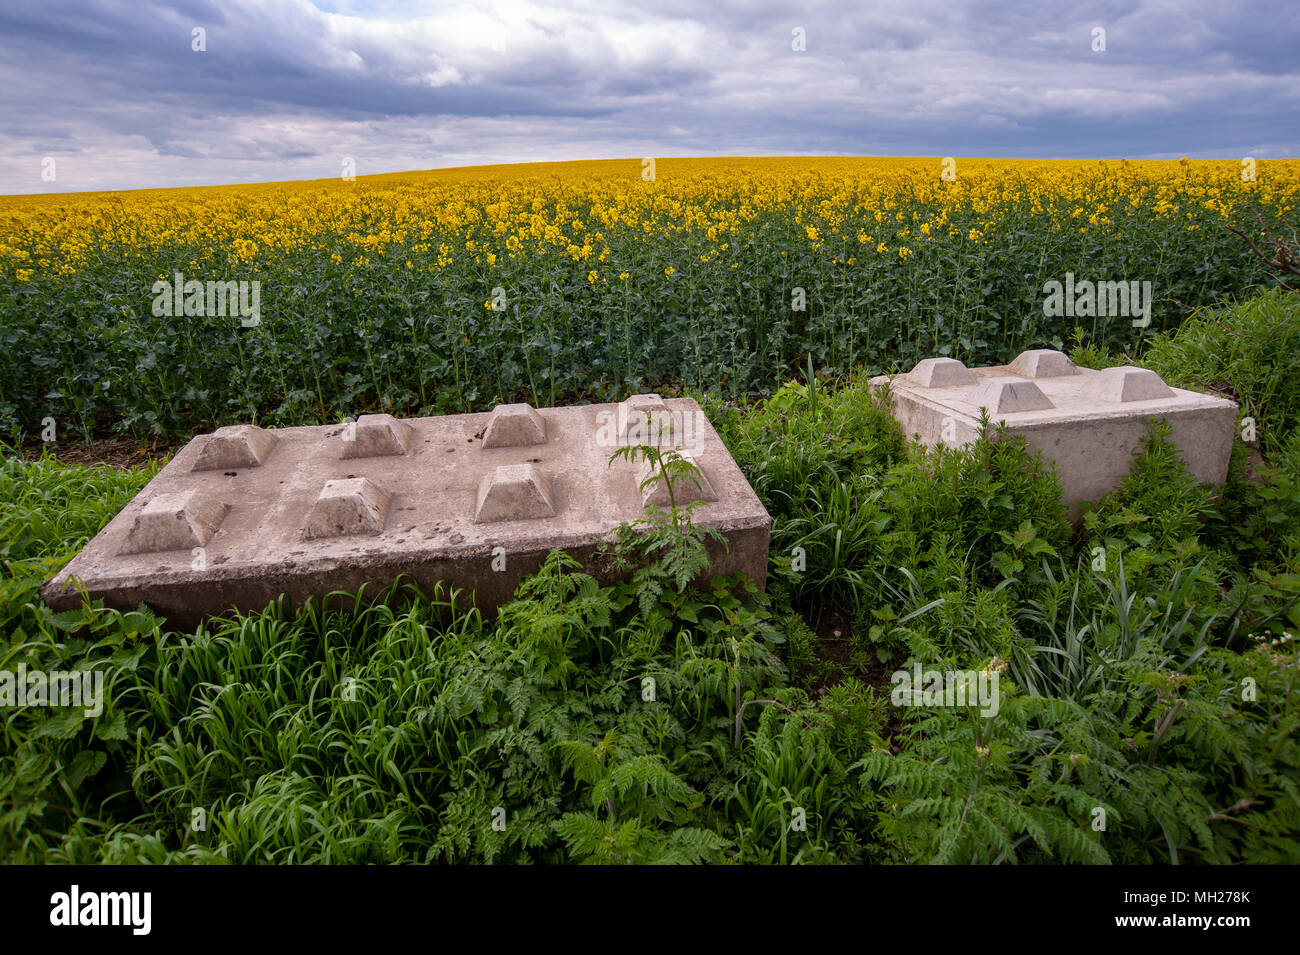 Blocchi sul paesaggio, blocchi di cemento grandi che guardano come mattoni  di lego giganti, usati dagli agricoltori per impedire l'accesso non  autorizzato ai terreni agricoli dai bracconieri Foto stock - Alamy